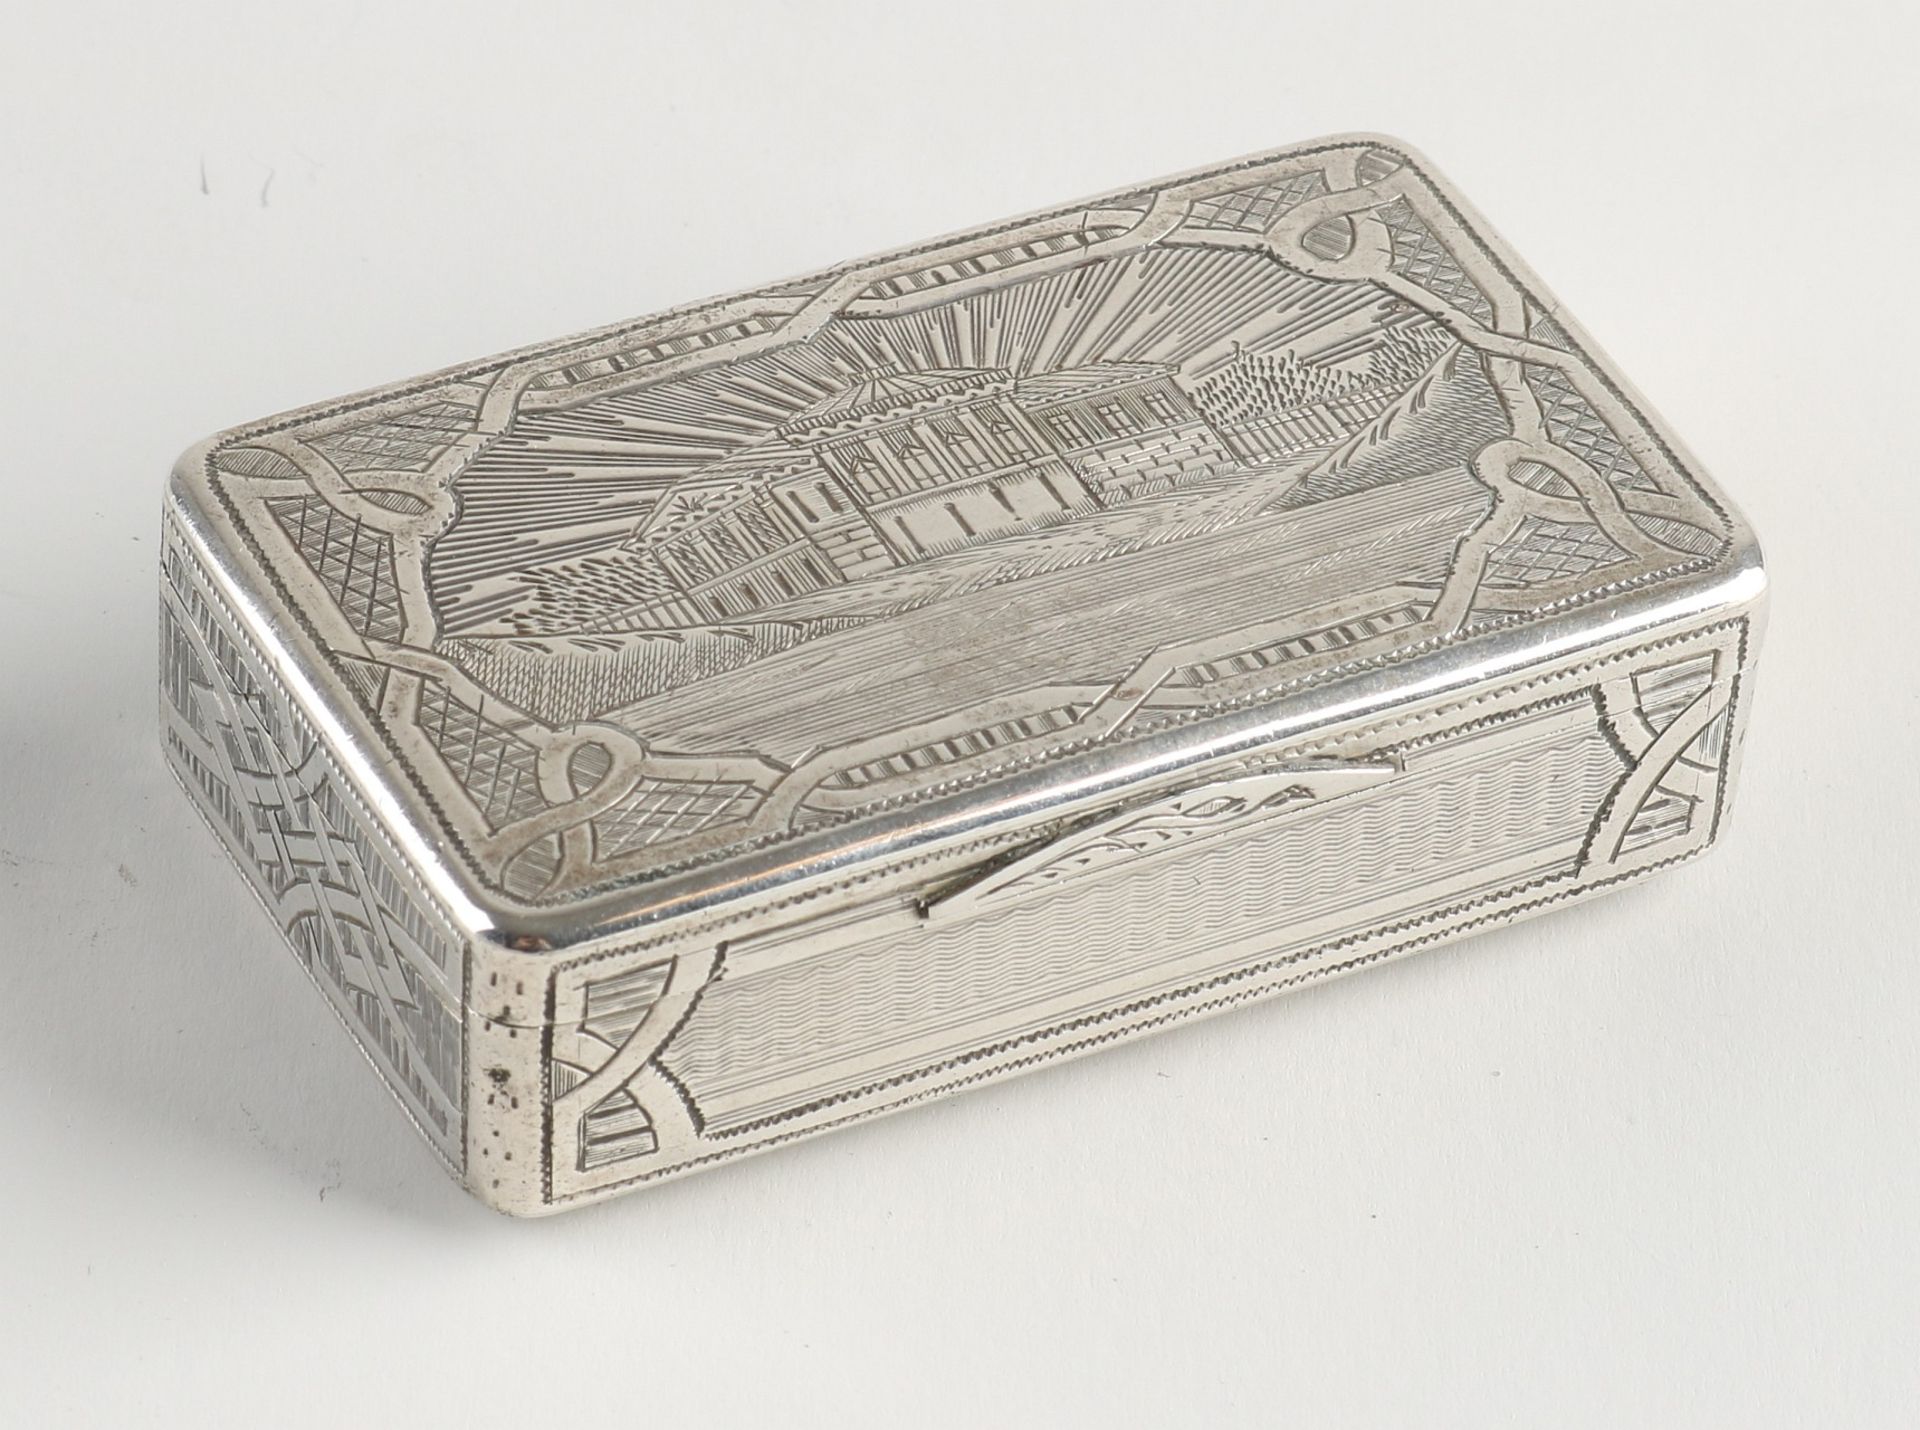 Silver snuff box (Russian)